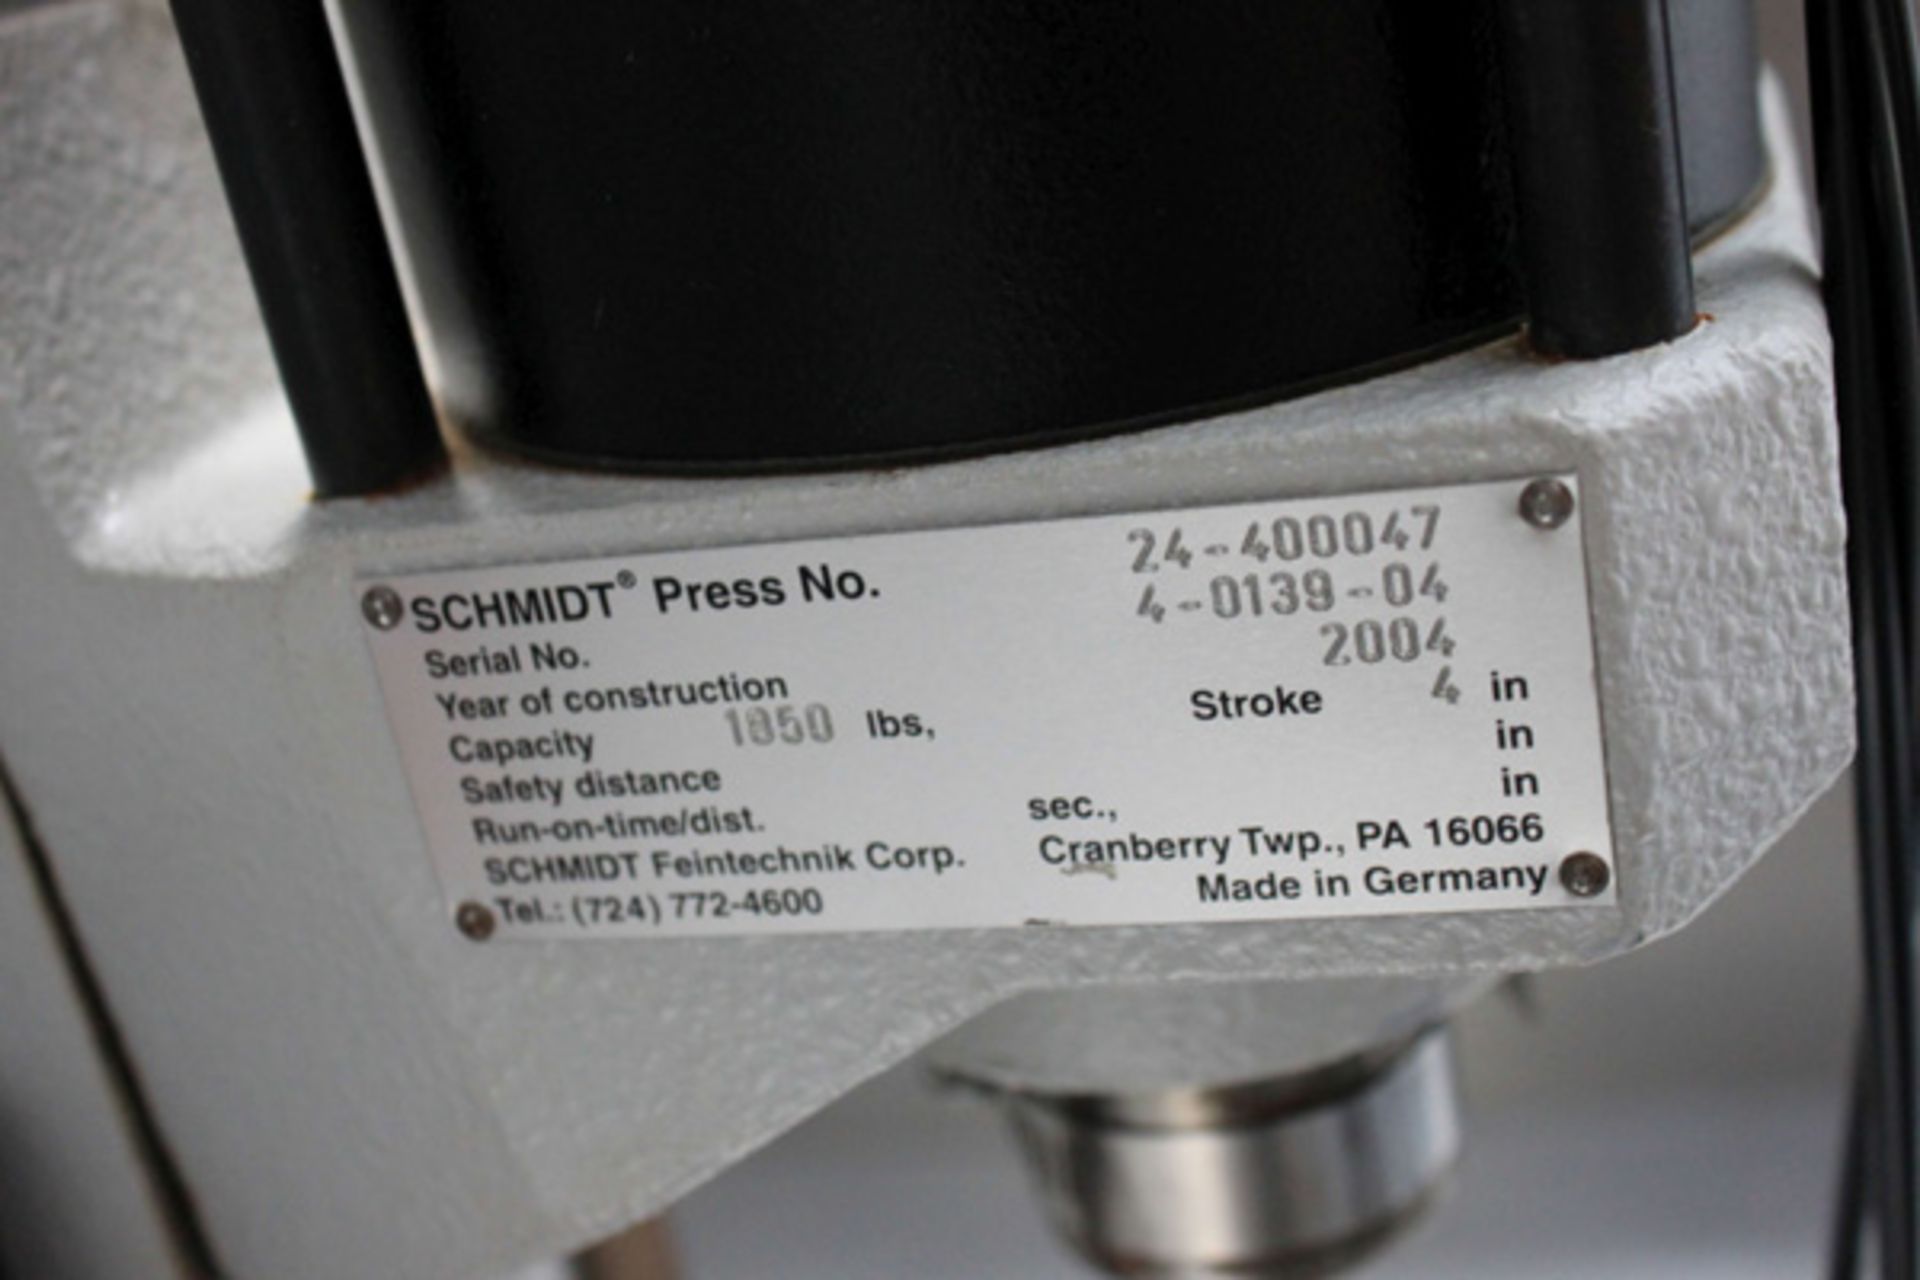 2004 Schmidt 1,850 Lb. Cap. Press, 4" Stroke, Press No. 24-40047 - Image 3 of 3